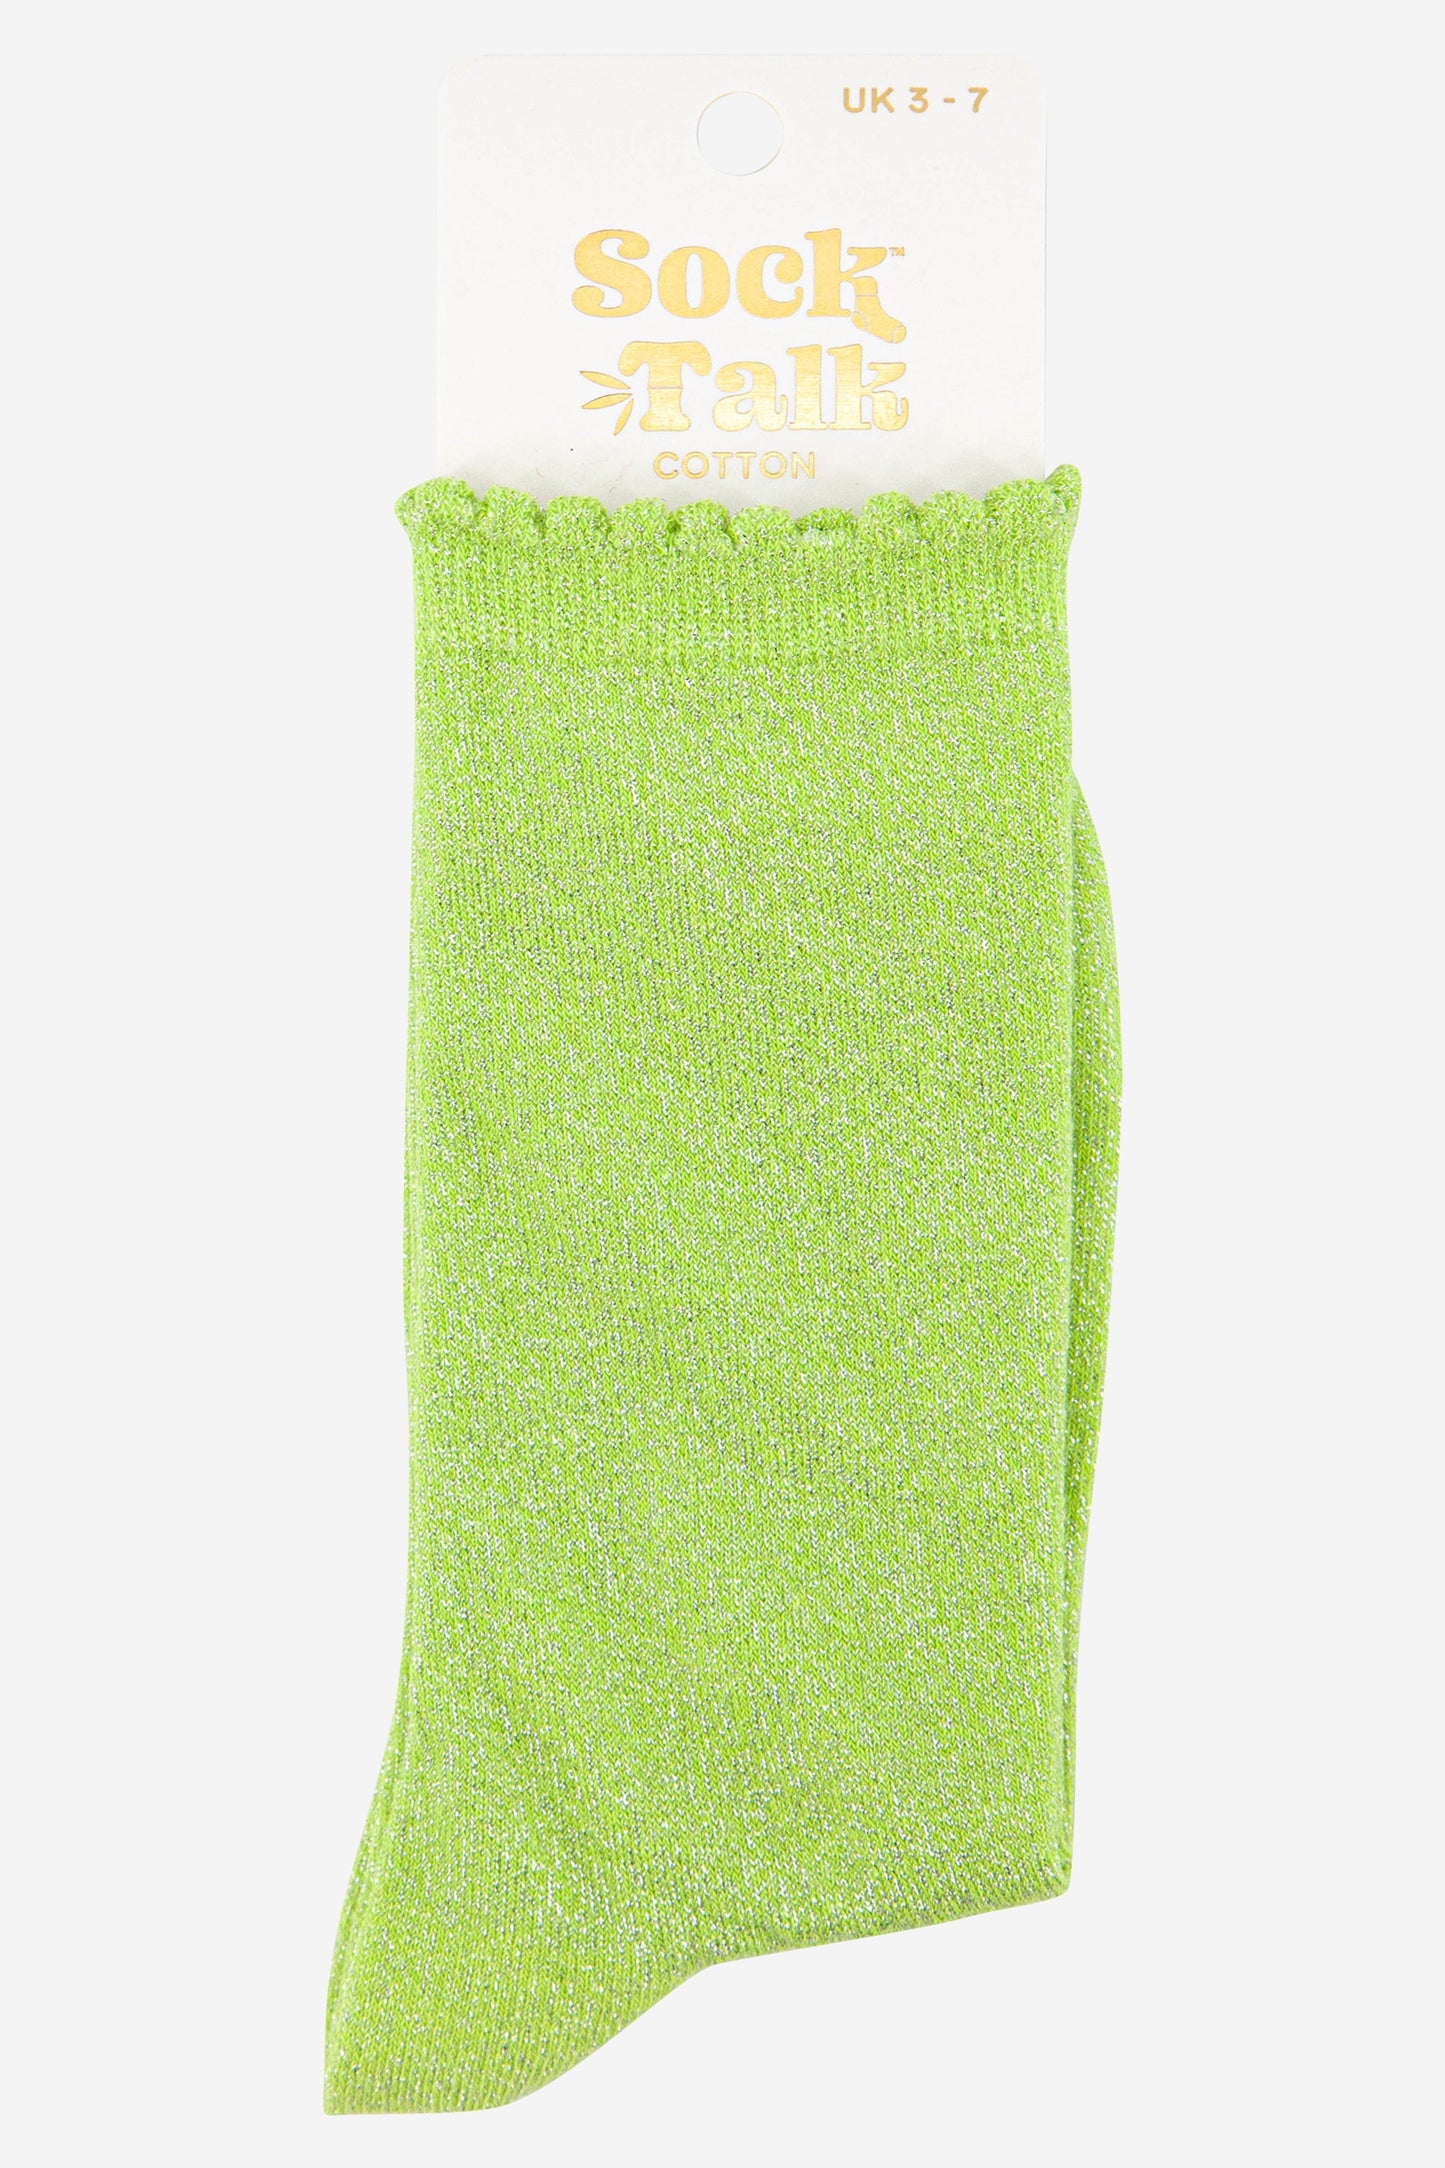 lime green scalloped cuff cotton glitter socks uk size 3-7